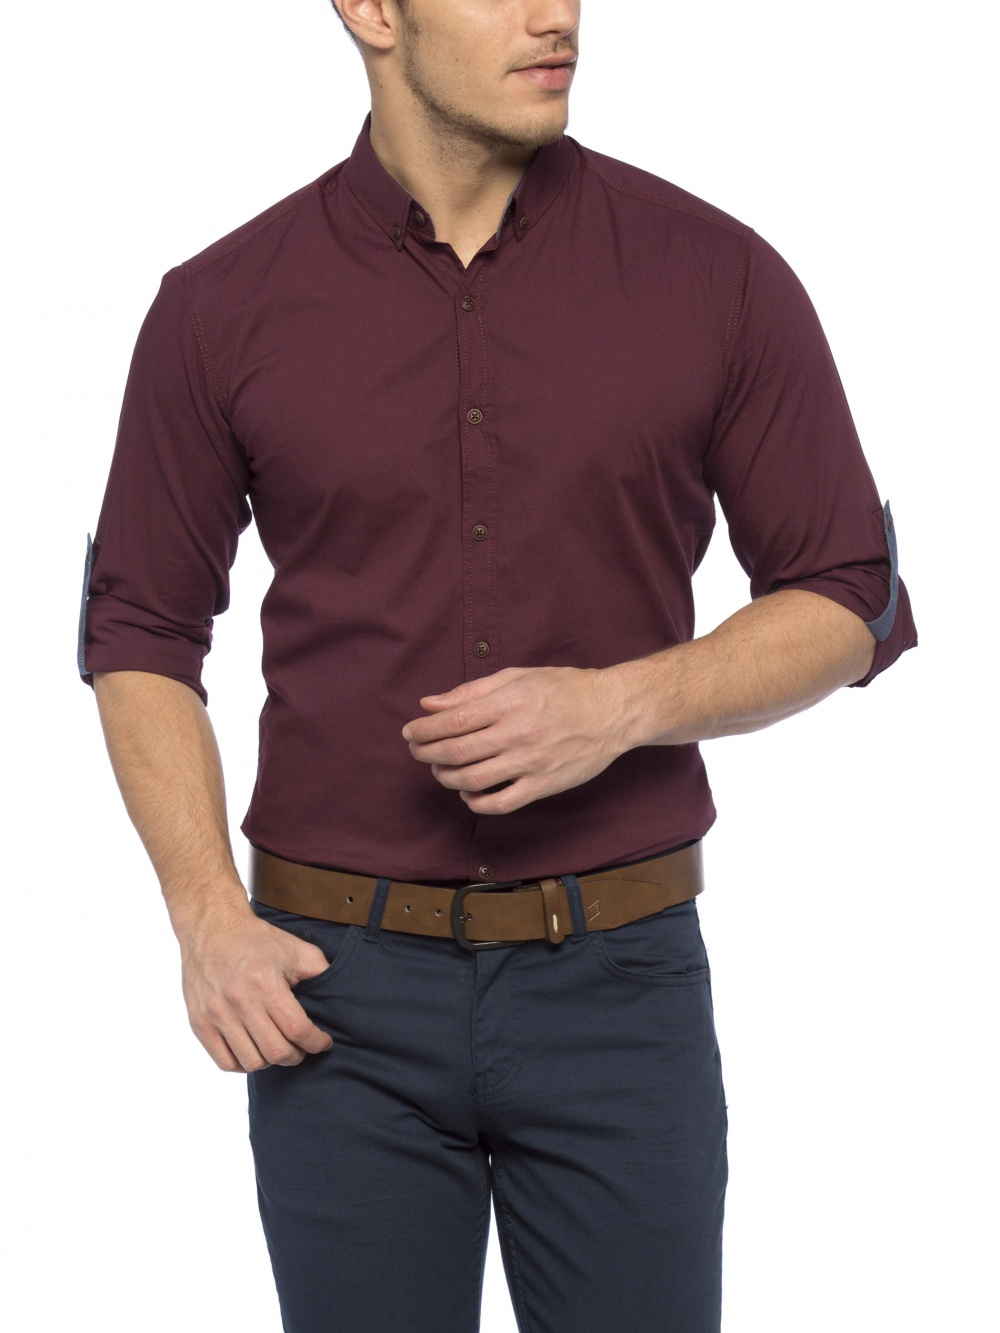 Рубашка мужская хлопковая, LCW Casual , XL (54 размер)